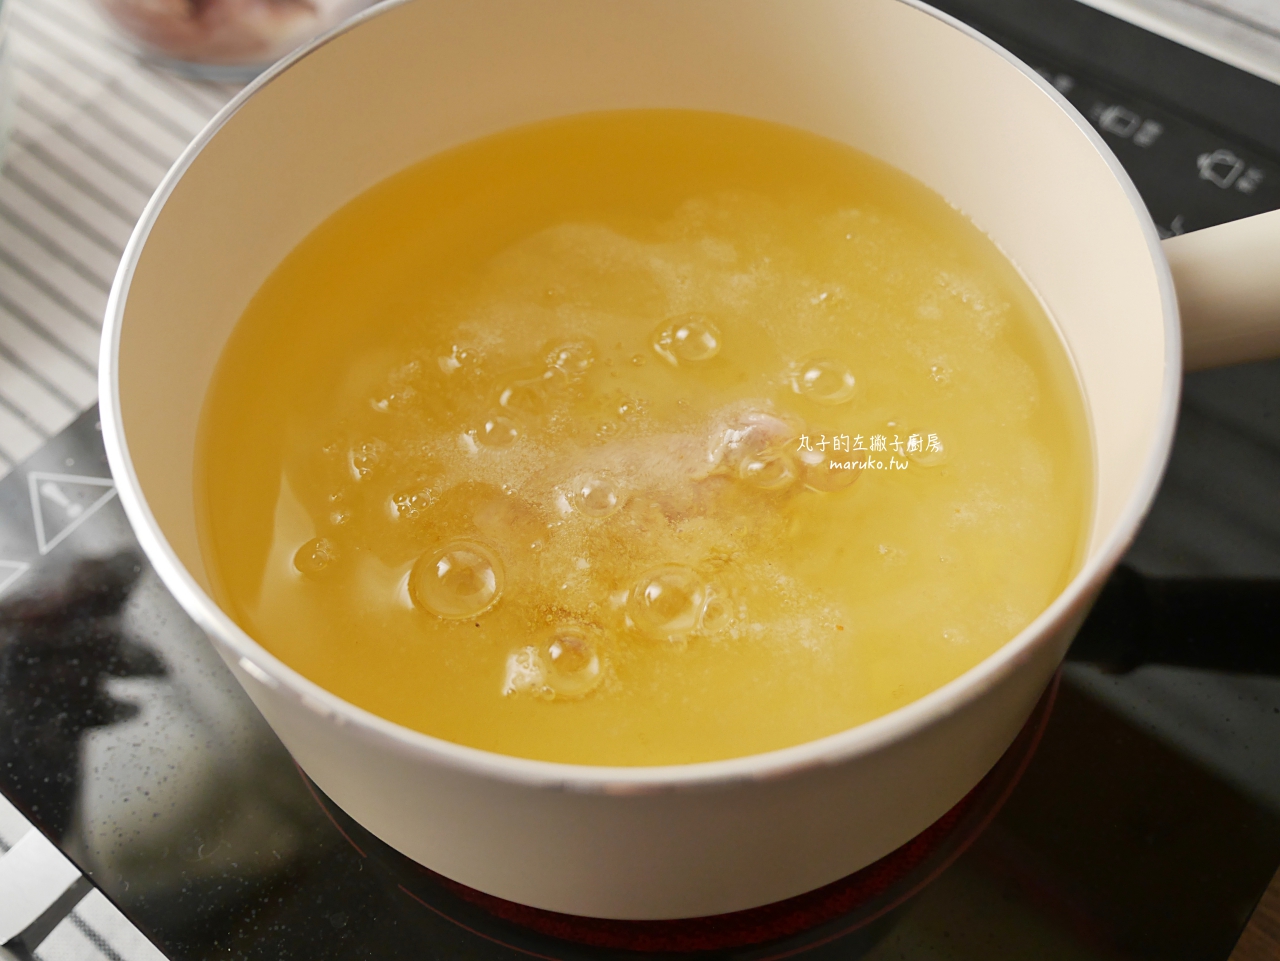 【食譜】韓式炸雞 自製脆皮咔拉炸雞粉 紐奧良風半半雞 @Maruko與美食有個約會